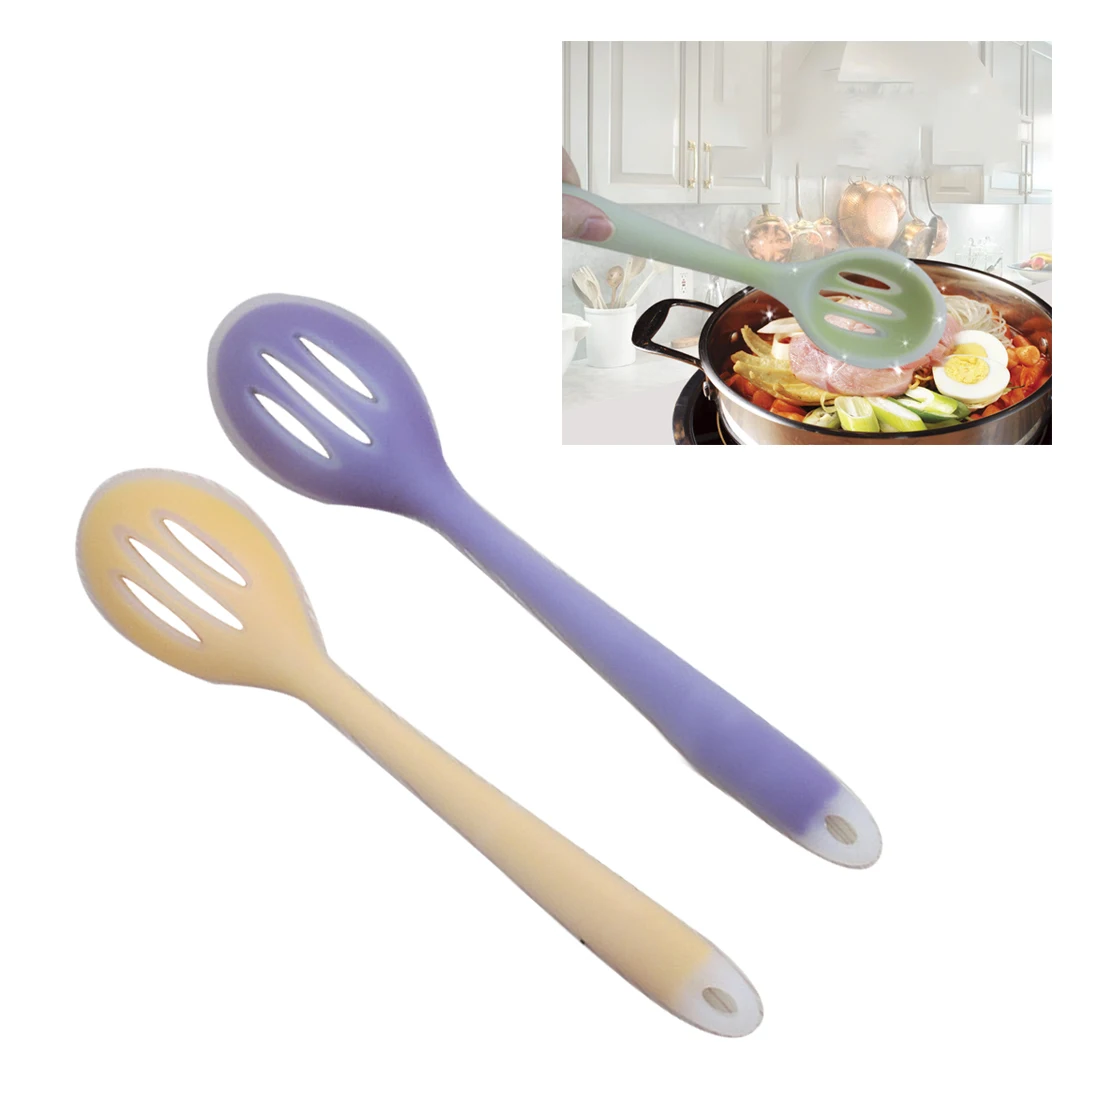 Полезная кухонная посуда из нейлона и пищевого силикона кухонные инструменты Лопатка и ложка красочные кухонные принадлежности